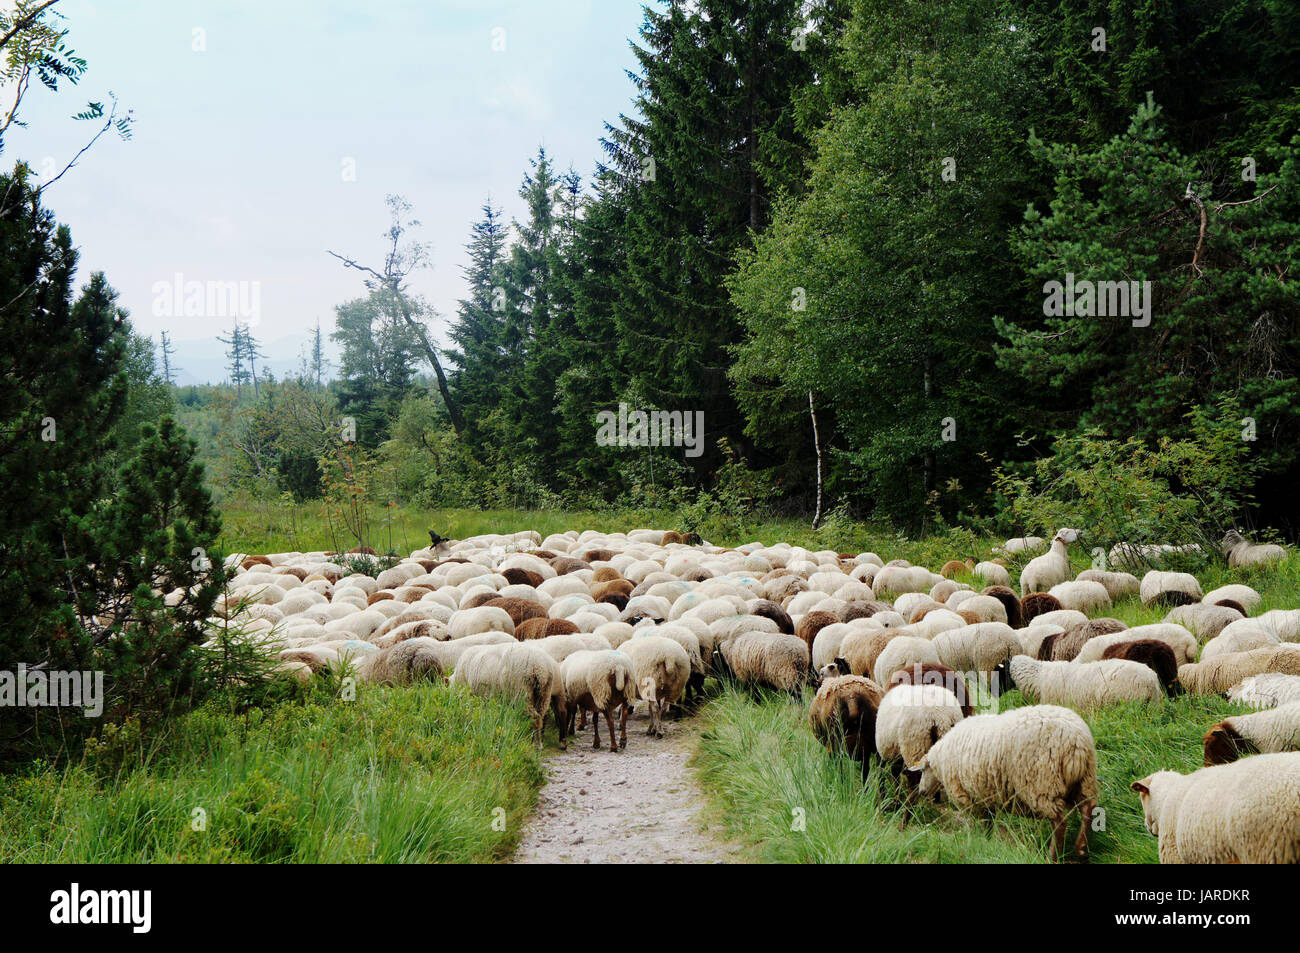 Weiße Und Dunkle Schafe arbeitet Einen Wanderweg Im Schwarzwald, Heidelbeergestrüpp Und Fichten White und dunkle Schafe überqueren einen Wanderweg in den Schwarzwald, Heidelbeere Büschen und Fichten Stockfoto